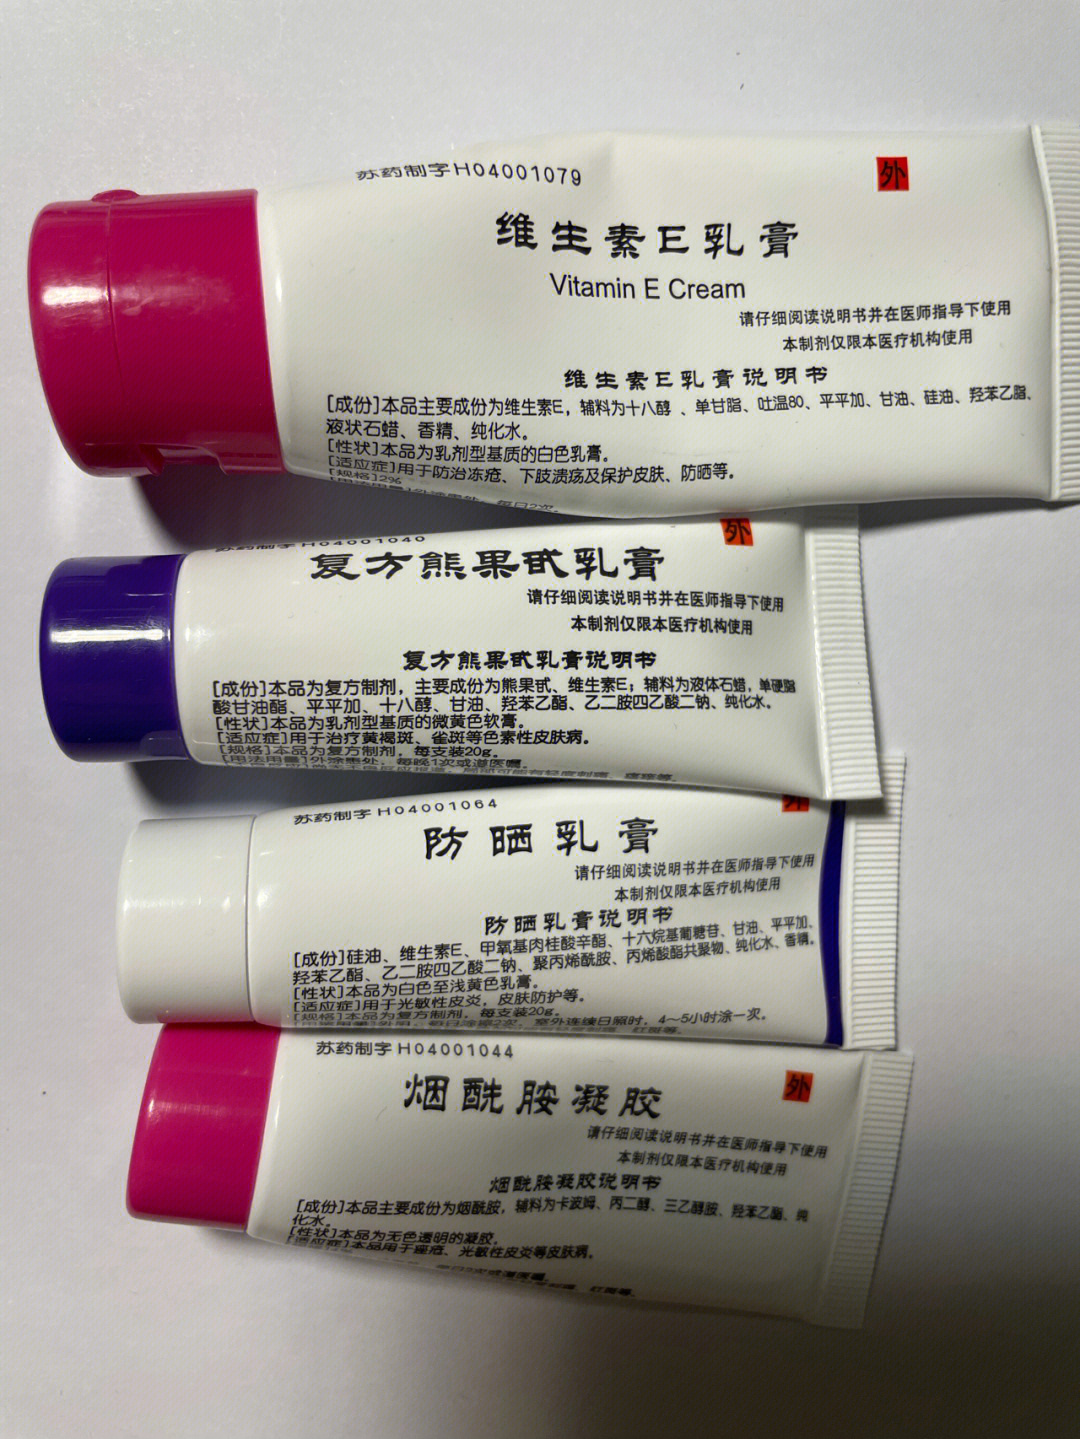 极简生活   微信上买的南京皮研所的维生素e乳膏,防晒乳膏,烟酰胺凝胶